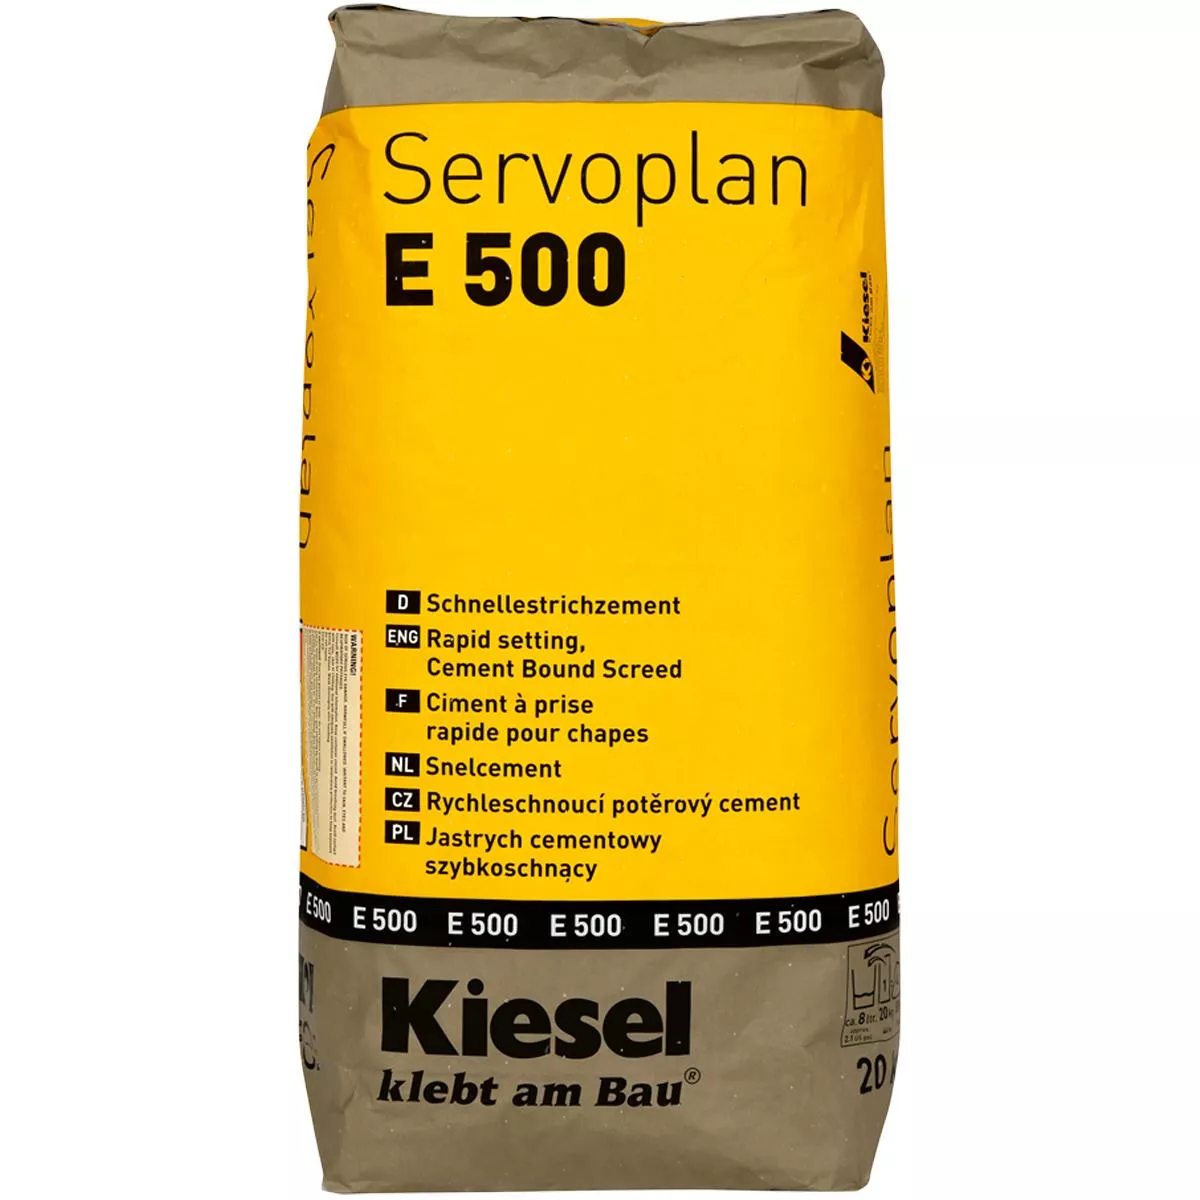 Βιβλίο για γρήγορες στρώσεις Kiesel Servoplan E 500 20 kg